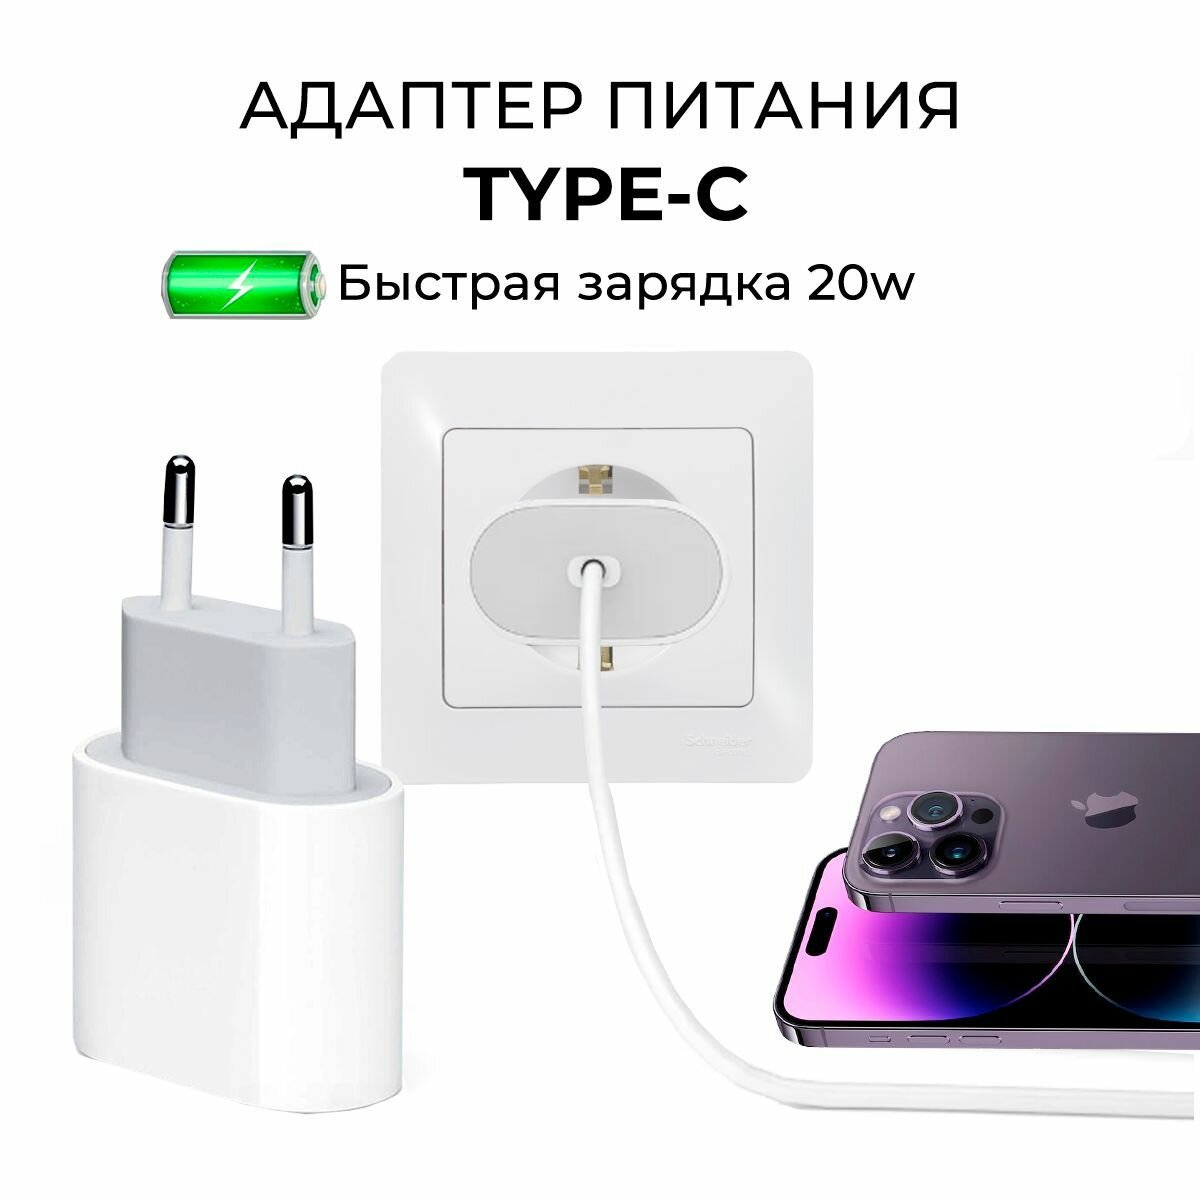 Быстрая Зарядка для iPhone iPad AirPods Android USB-C TYPE-C Адаптер питания 20W Сетевое зарядное устройство Блок питания для телефона 20W